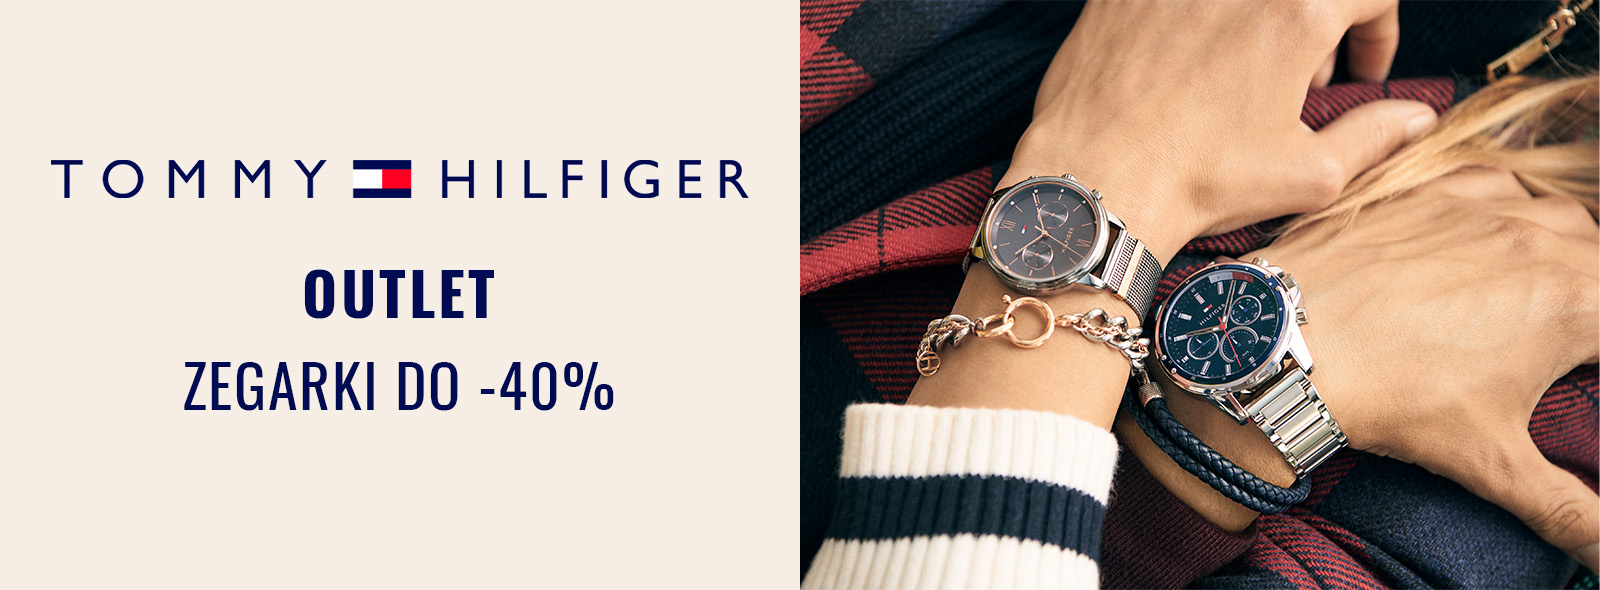 Wyprzedaż zegarków Tommy Hilfiger - outletowe modele do -40% taniej! |  Zegarownia.pl Blog